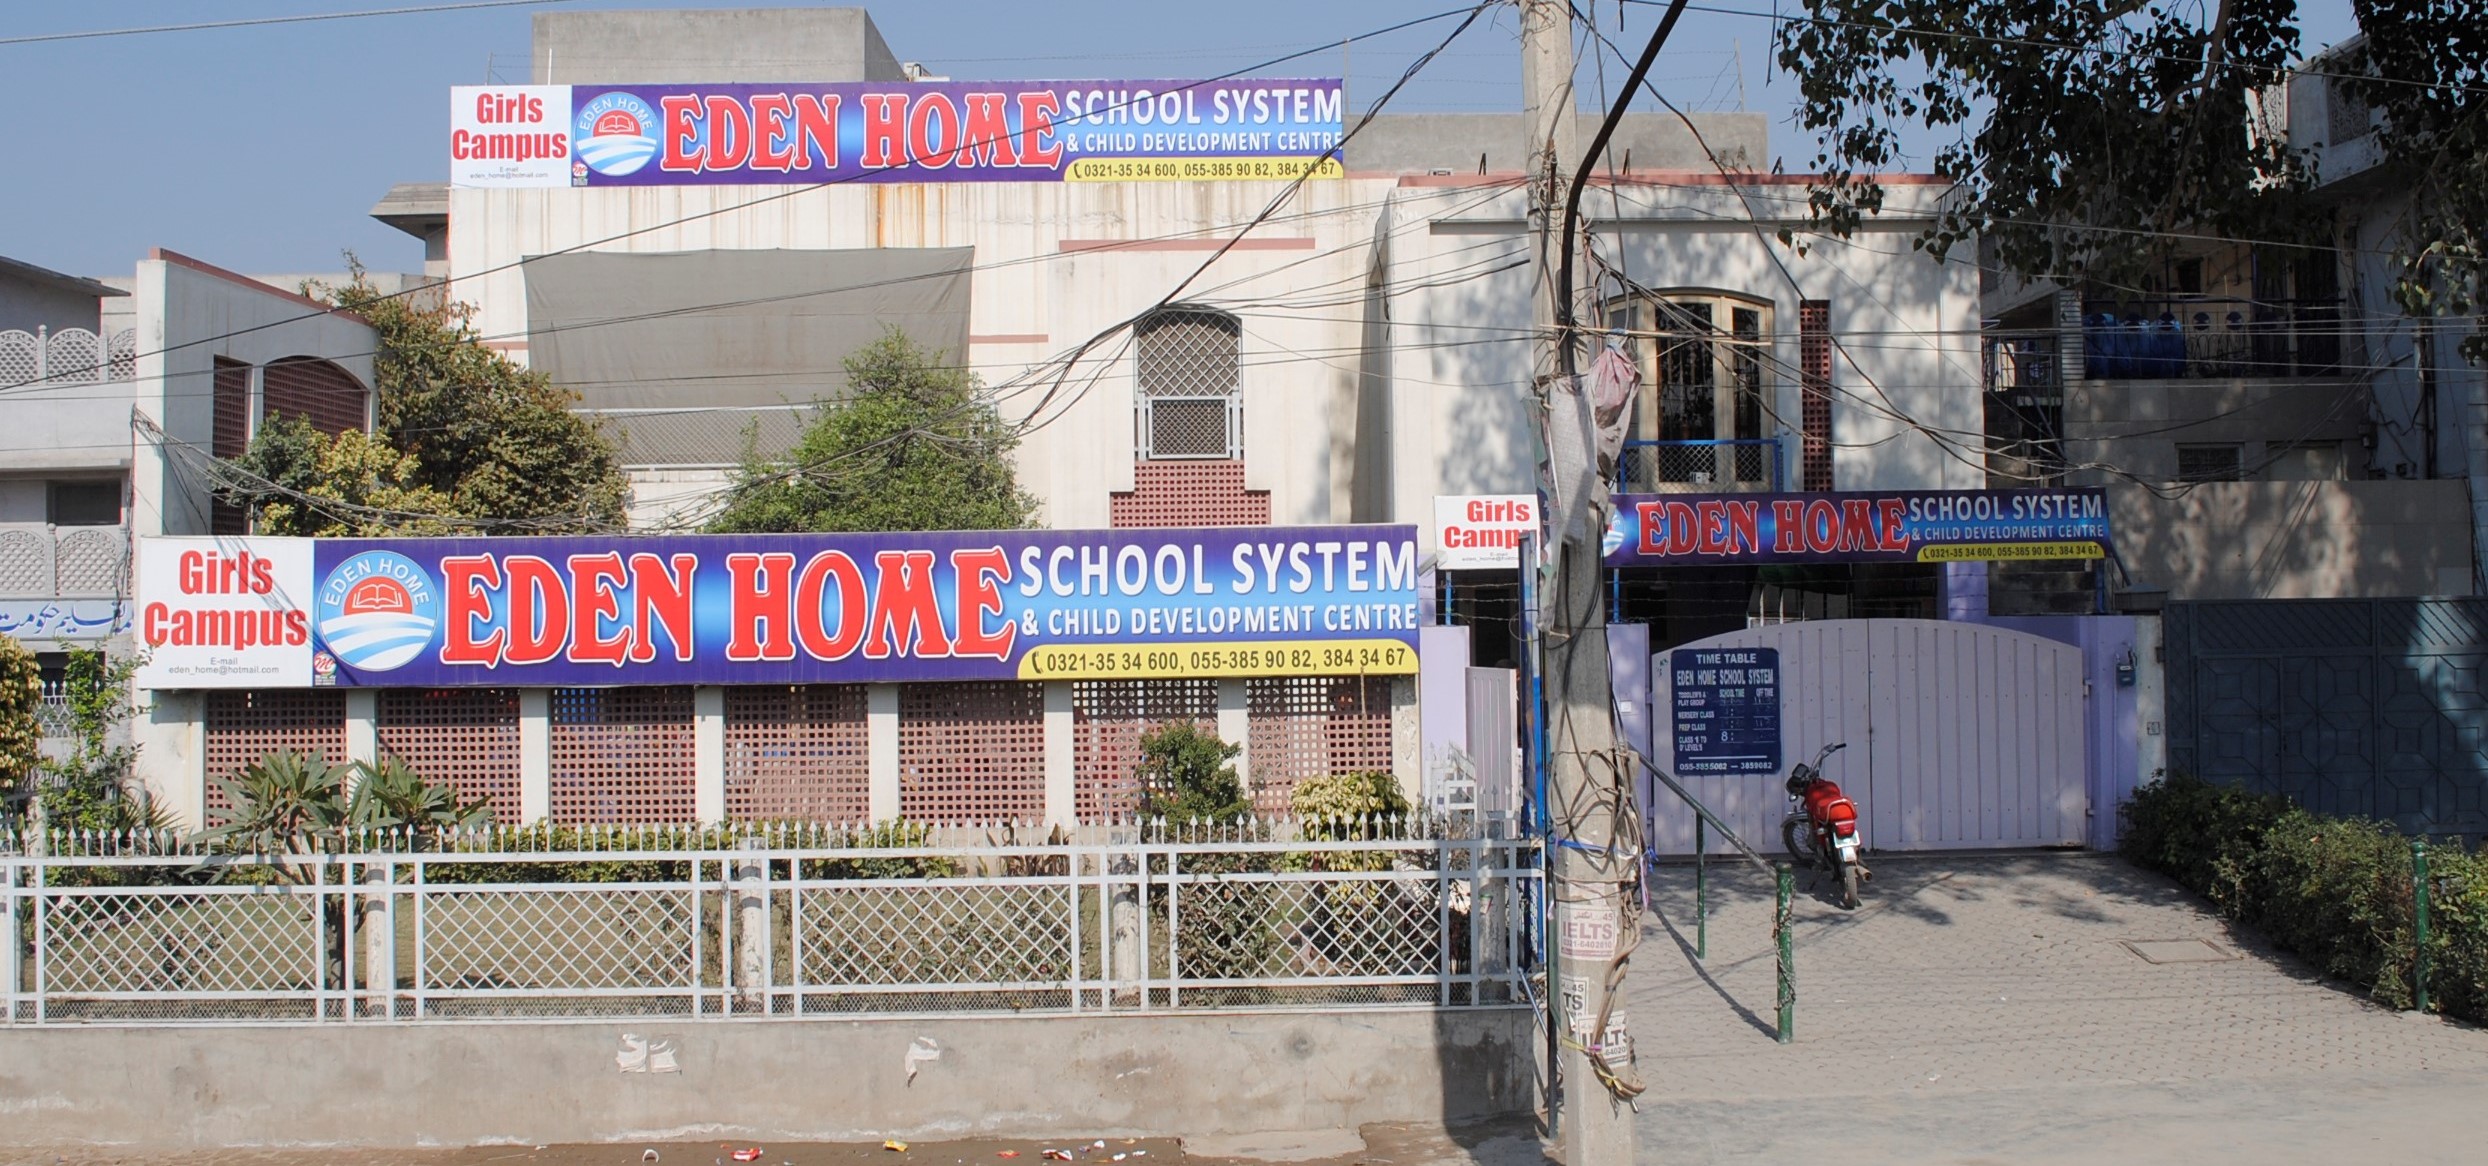 Eden Home School System & Child Development Centre